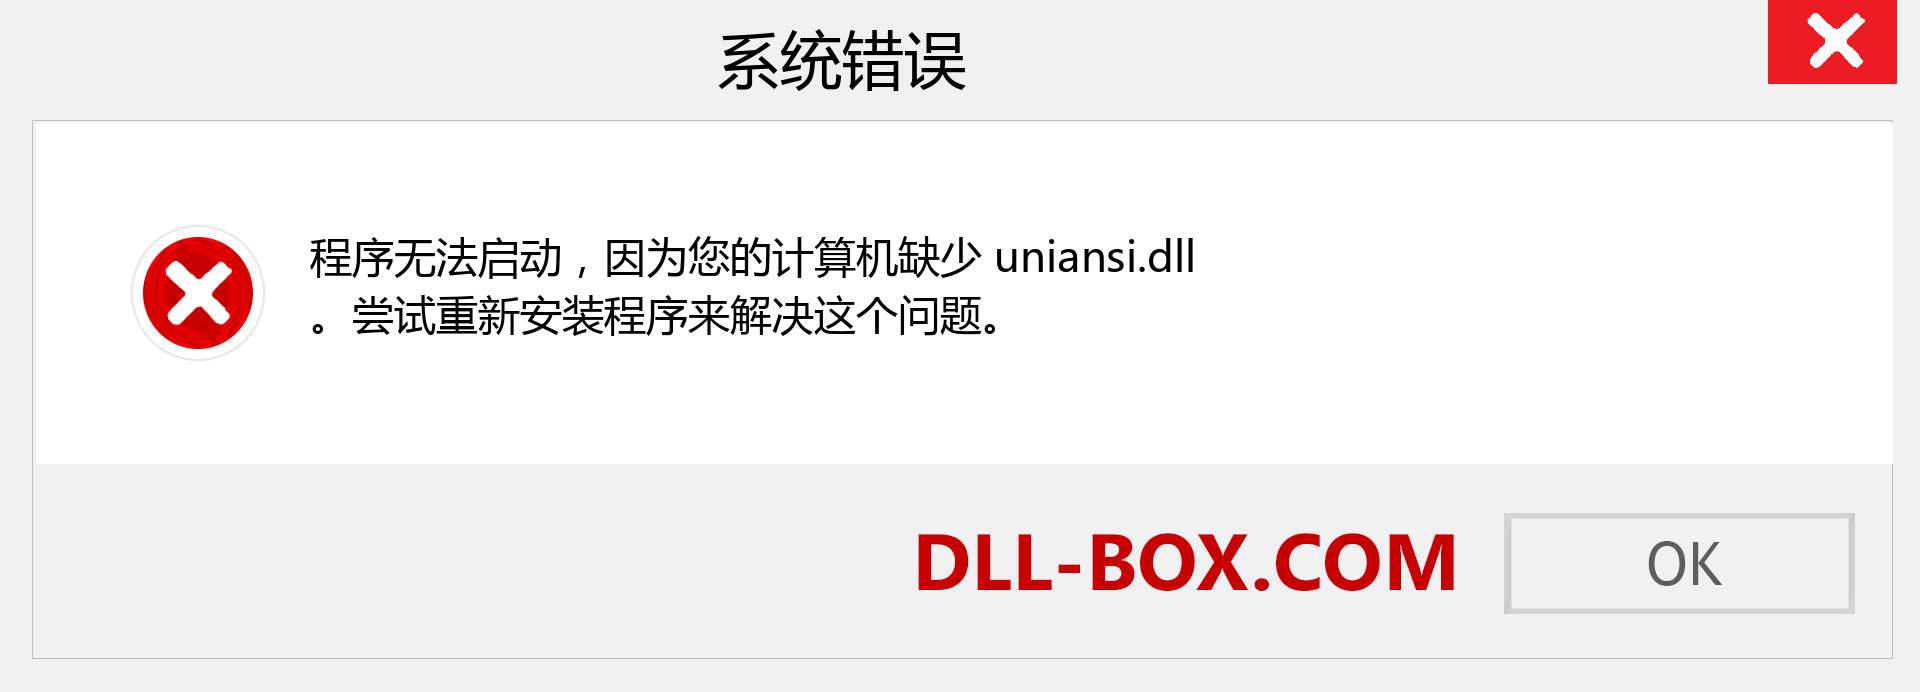 uniansi.dll 文件丢失？。 适用于 Windows 7、8、10 的下载 - 修复 Windows、照片、图像上的 uniansi dll 丢失错误